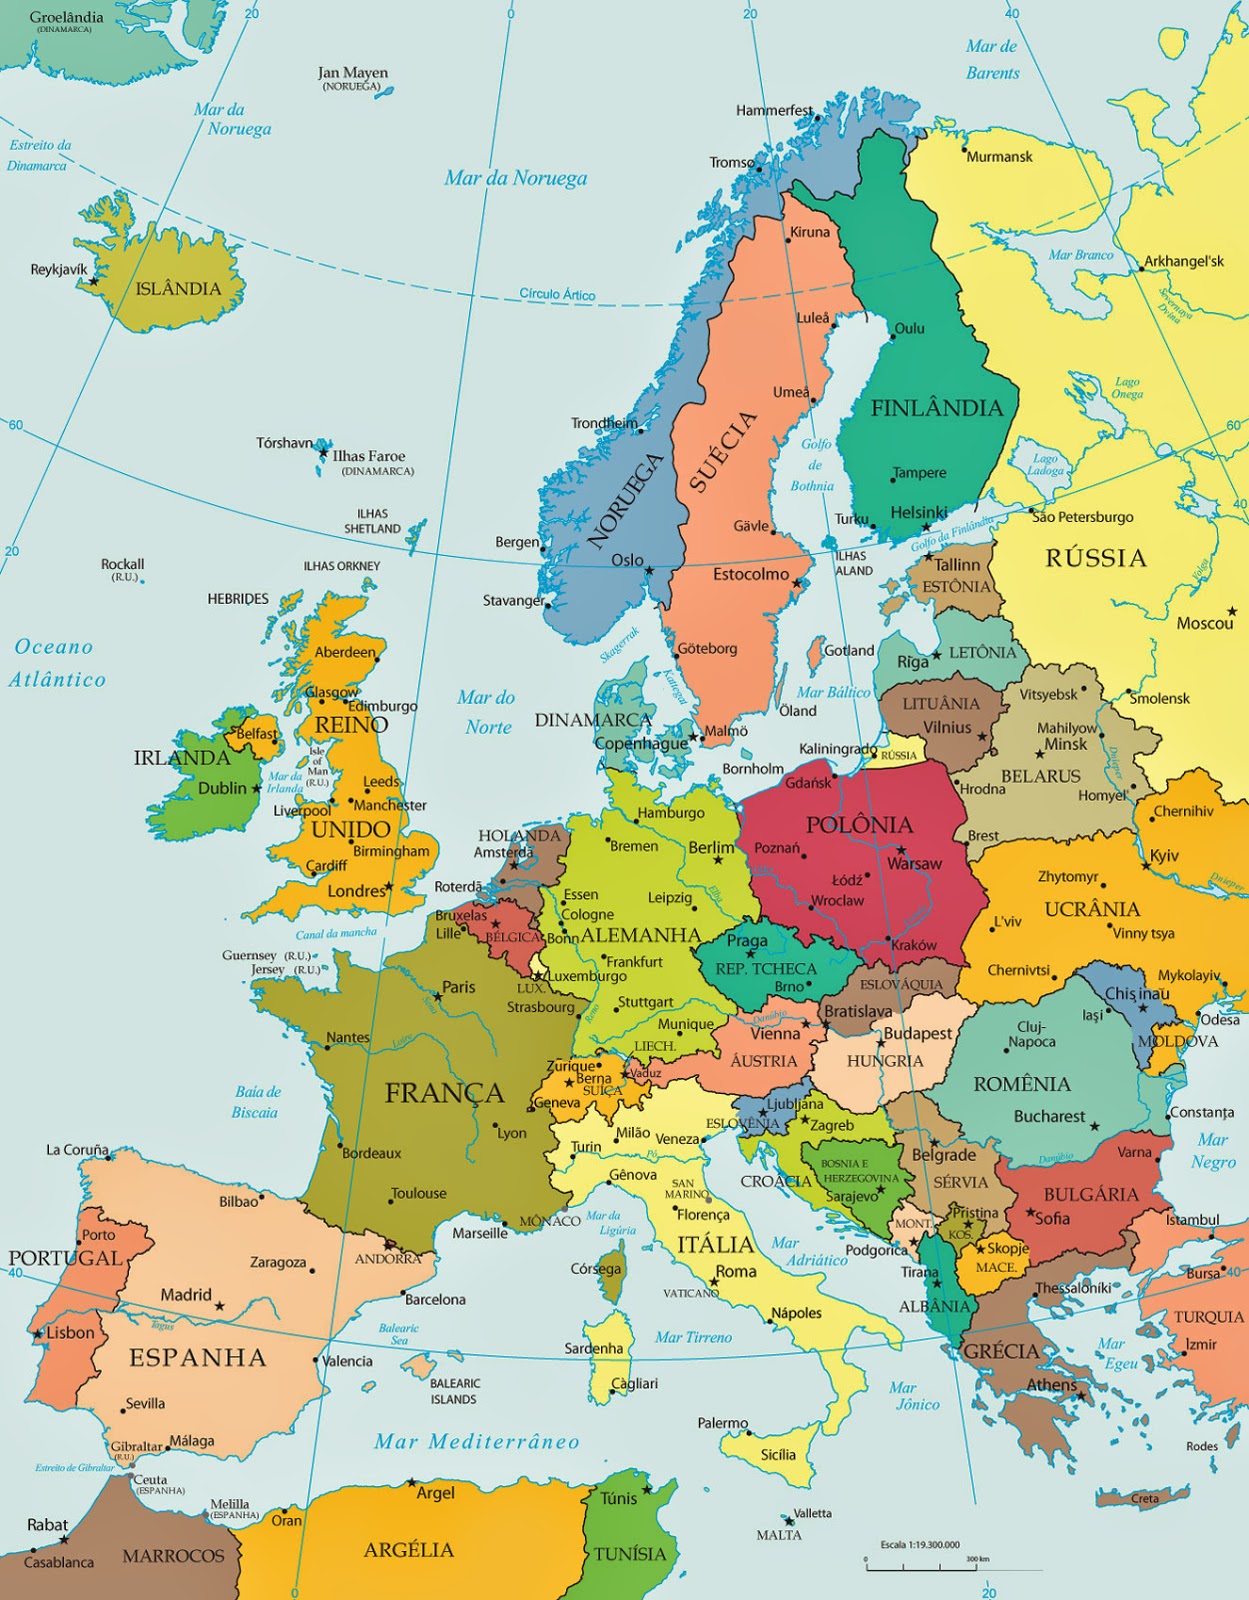 Prof. Francisco: Países e capitais da Europa